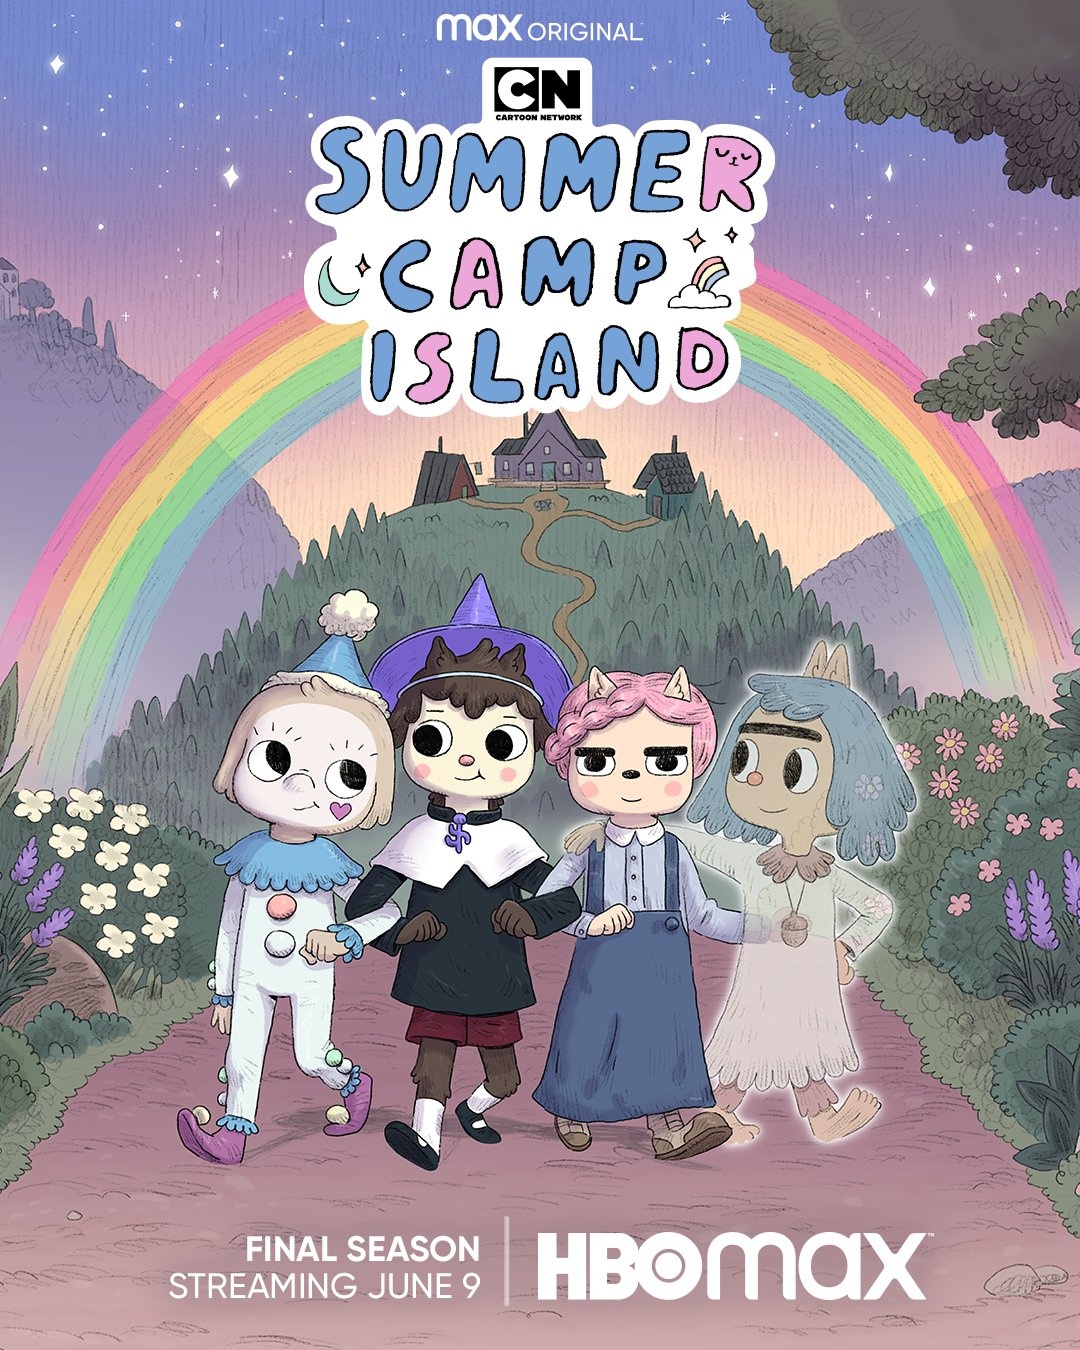 Финальный сезон "Summer Camp Island" выйдет 9 июня. Всего будет 20 серий....